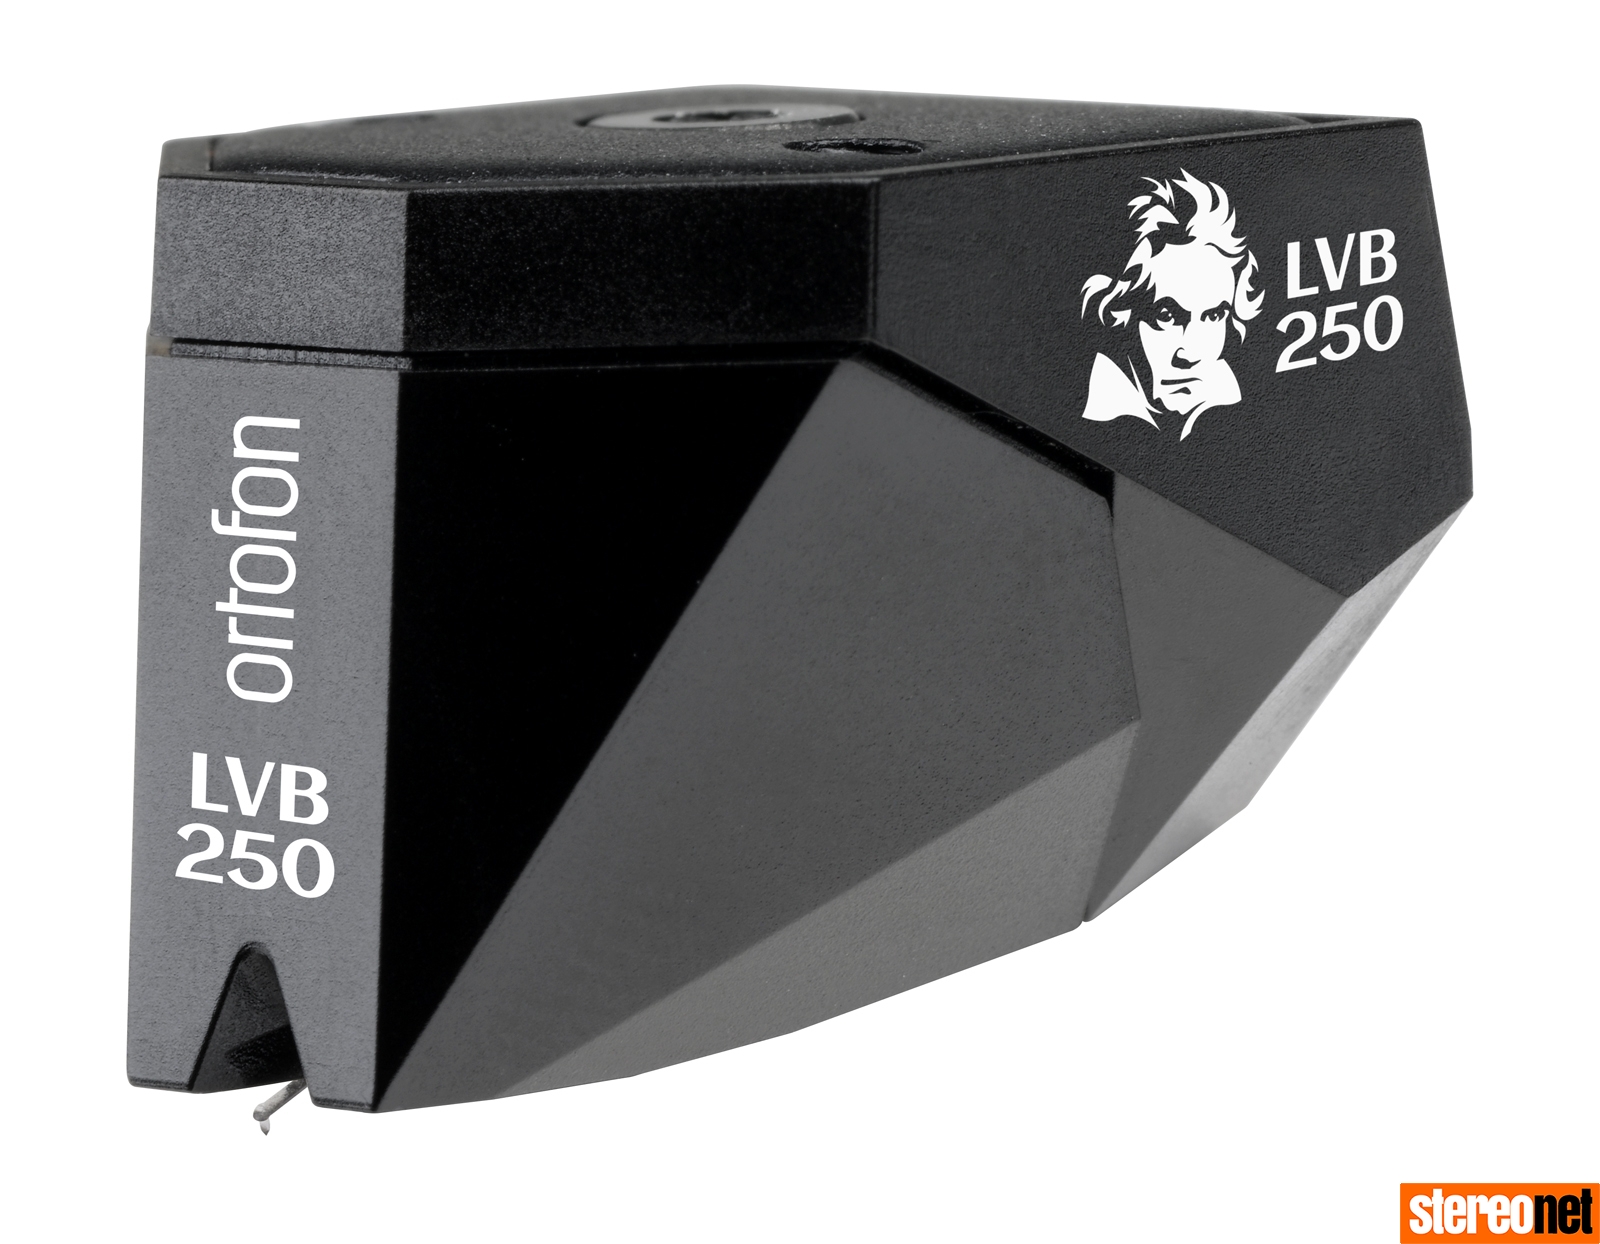 Ortofon 2M Black LVB 250 Review